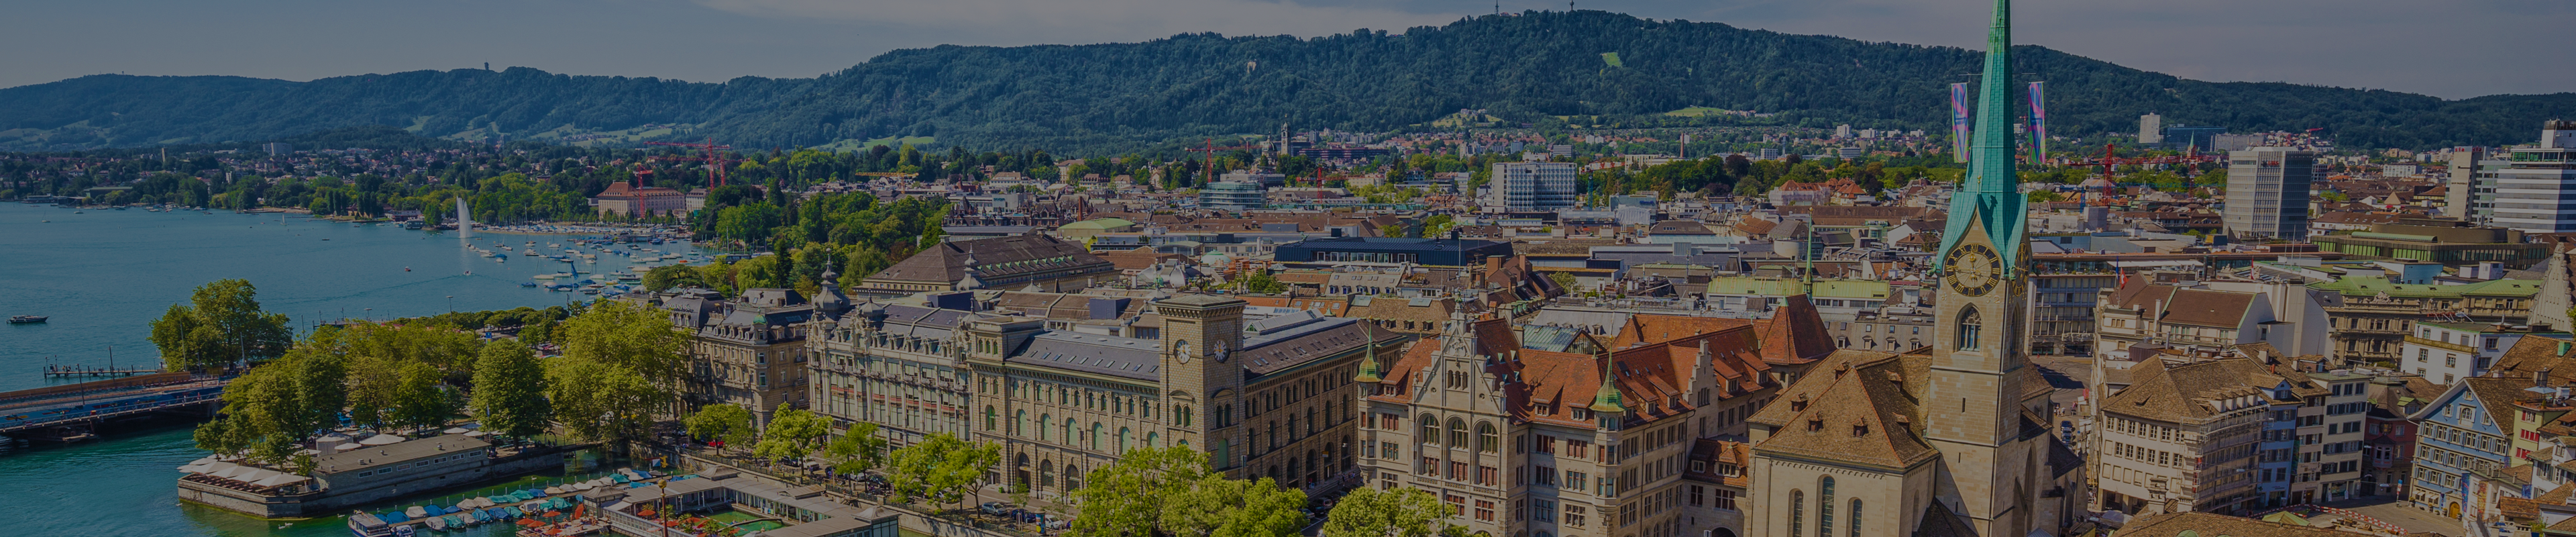 Best Digital Marketing Agencies in Zurich